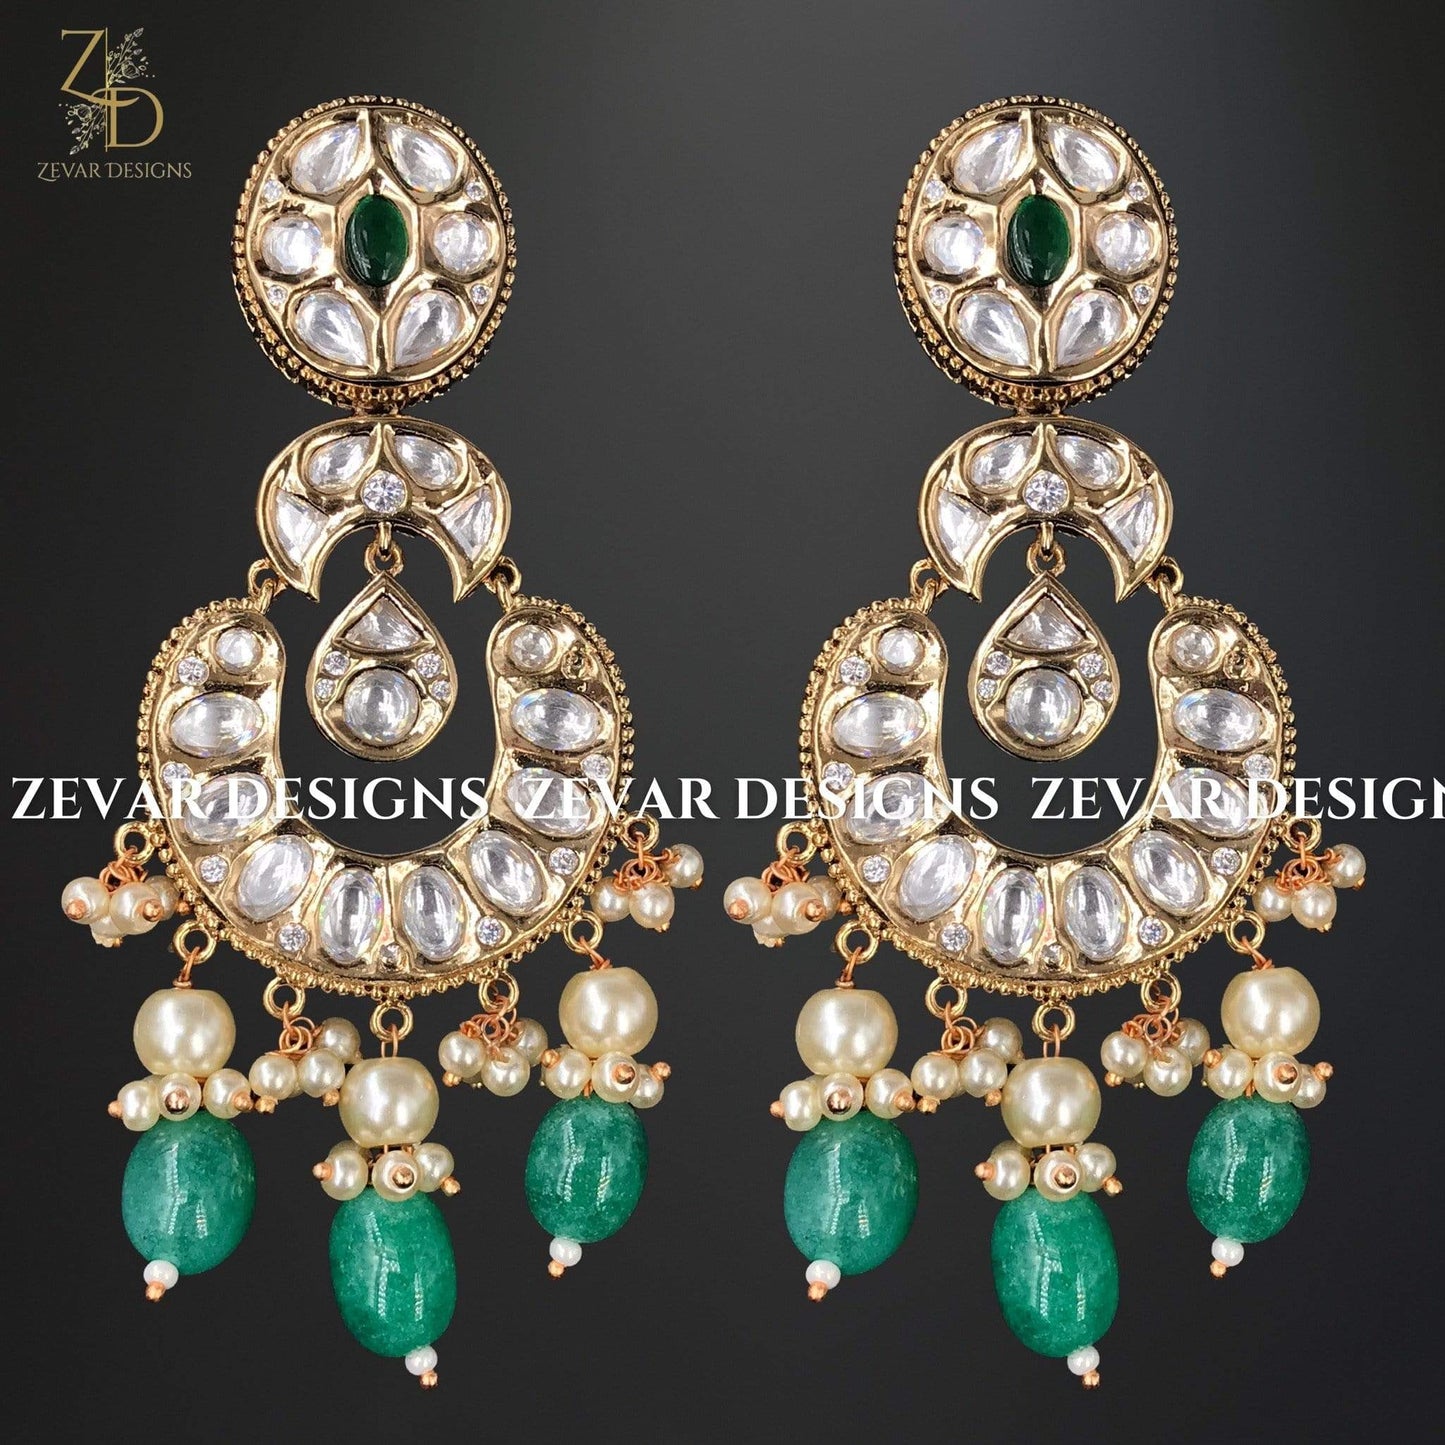 Zevar Designs Zircon Earrings Kundan Earrings with Green Drops